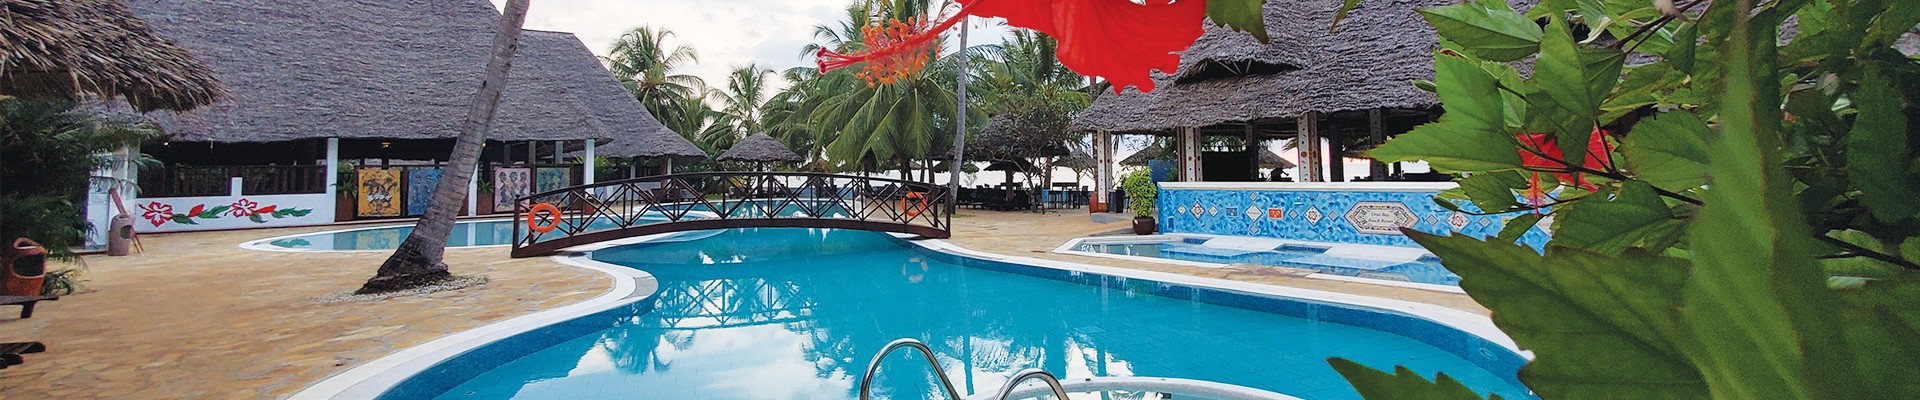 3* Plus Uroa Bay Beach Resort - Zanzibar Package (5 Nights)